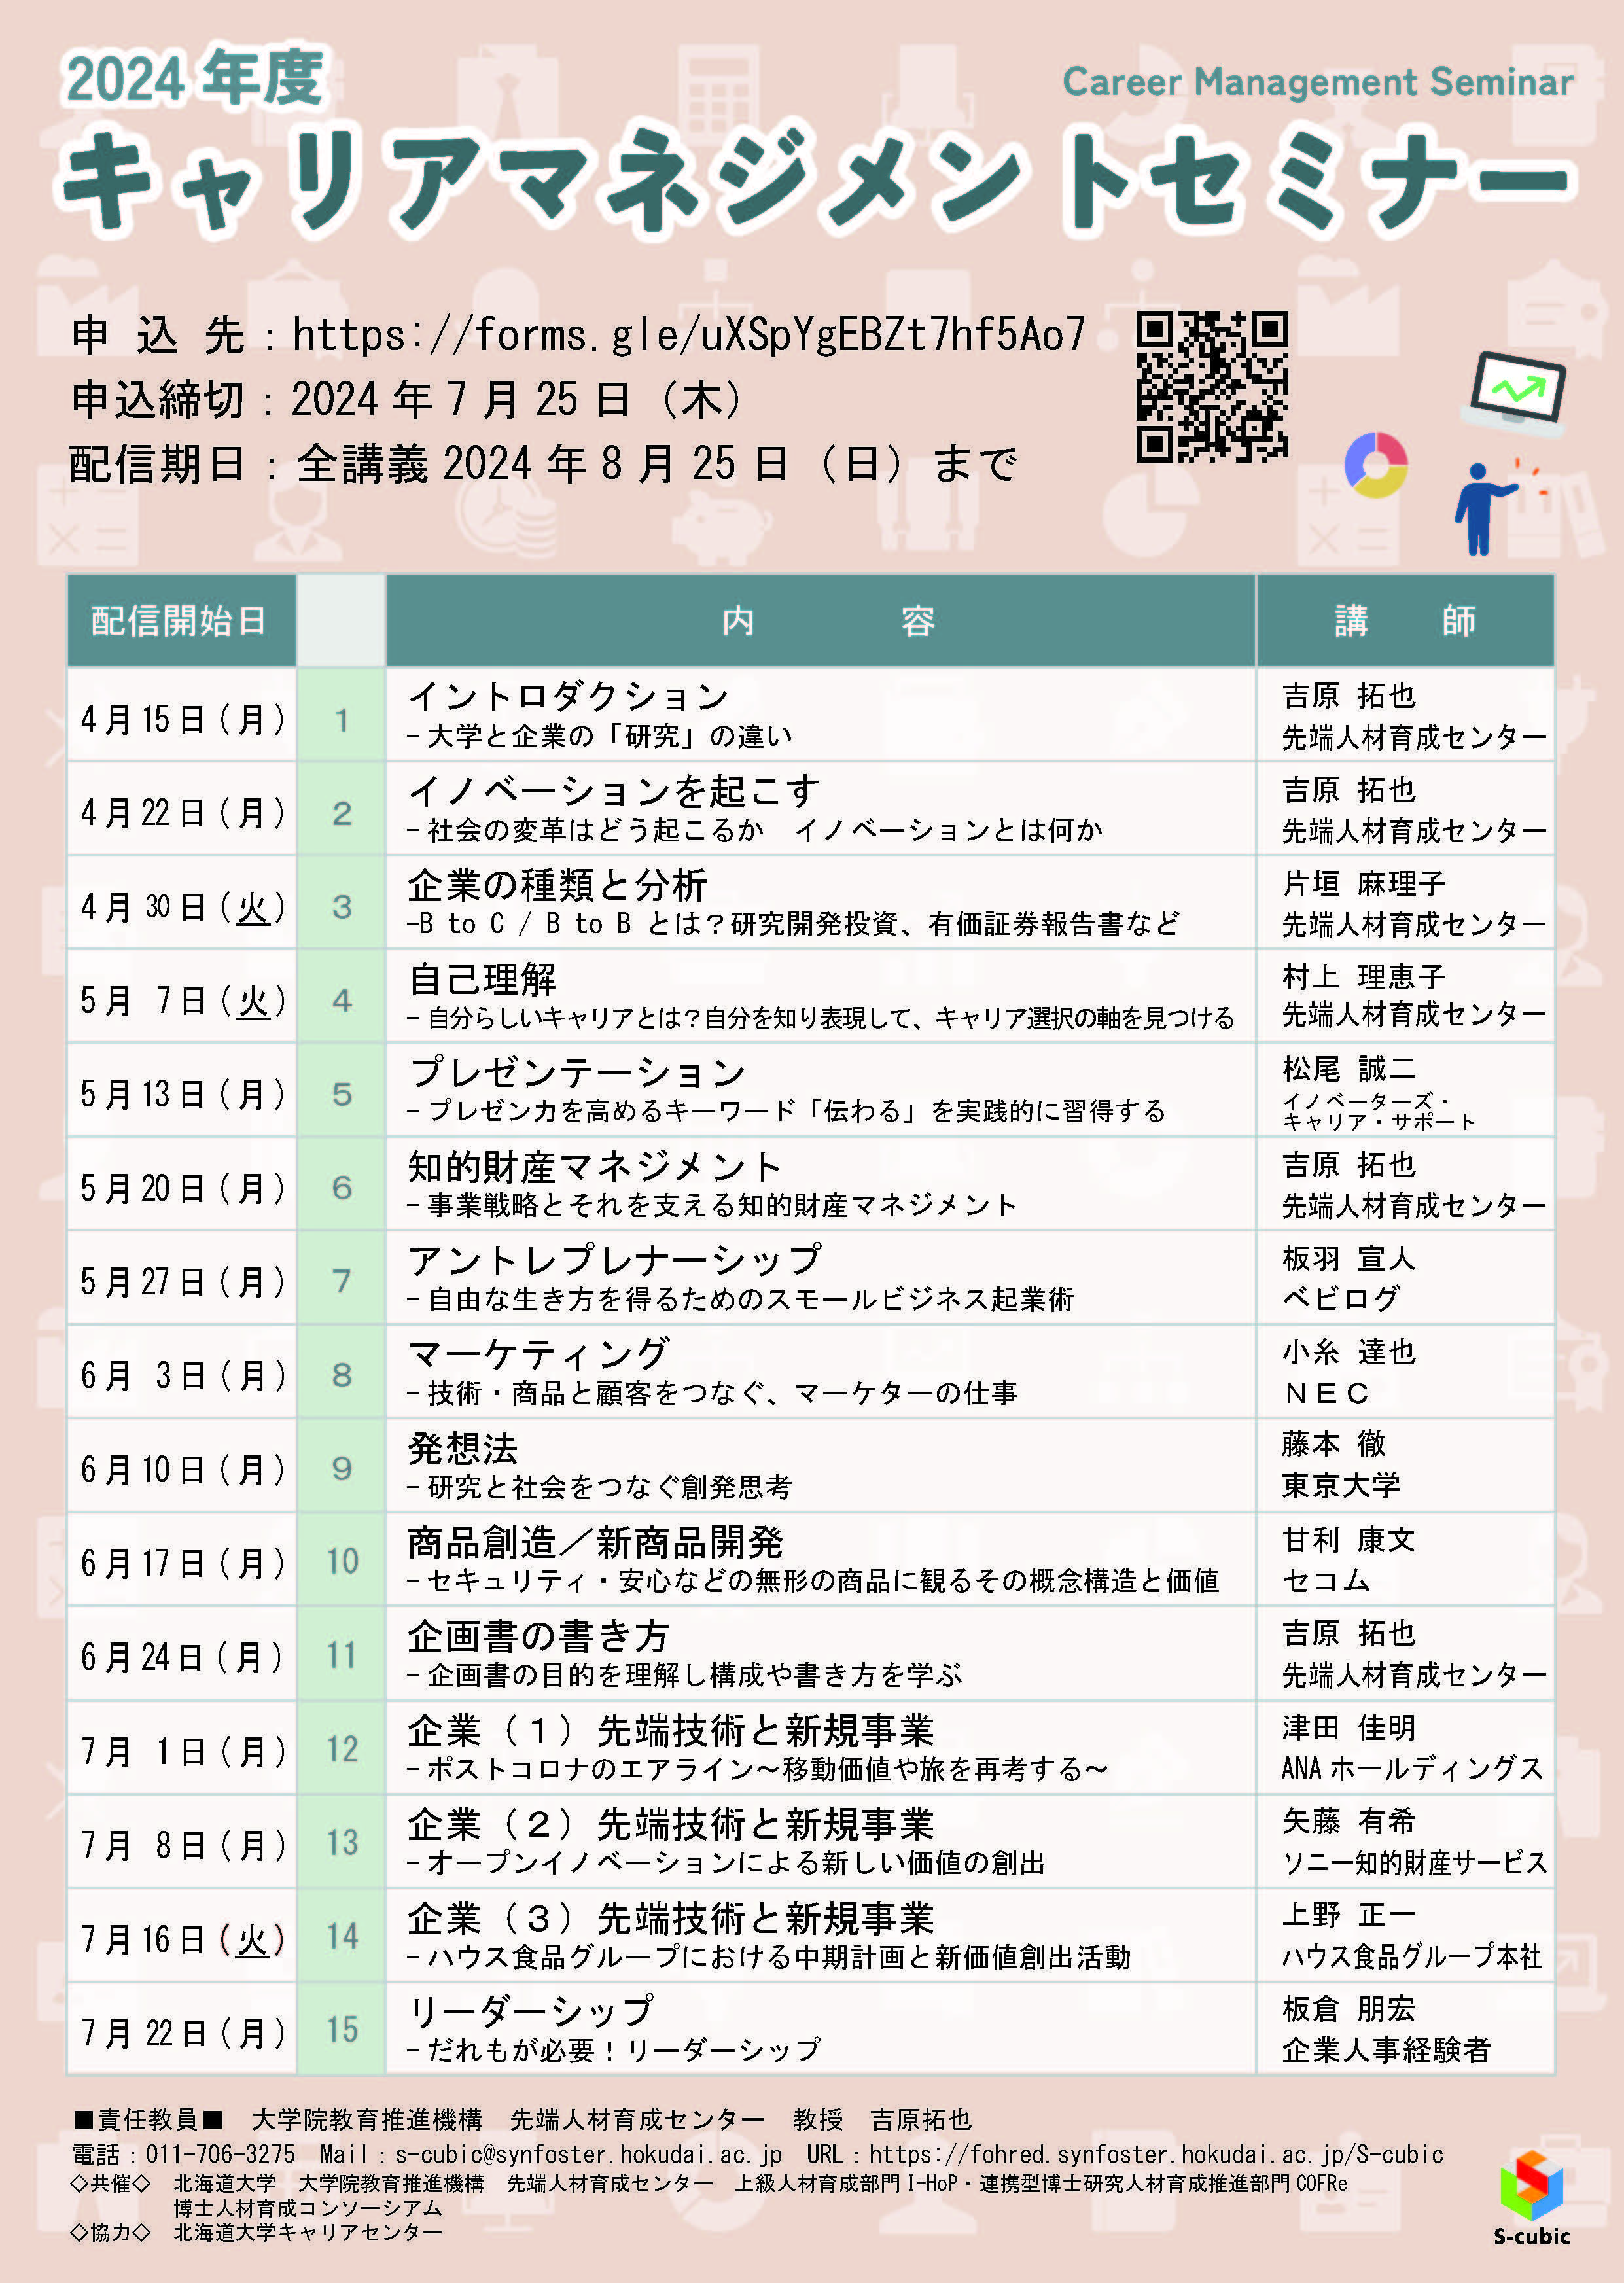 【CCDP共有プログラム】2024年度キャリアマネジメントセミナー（北海道大学）